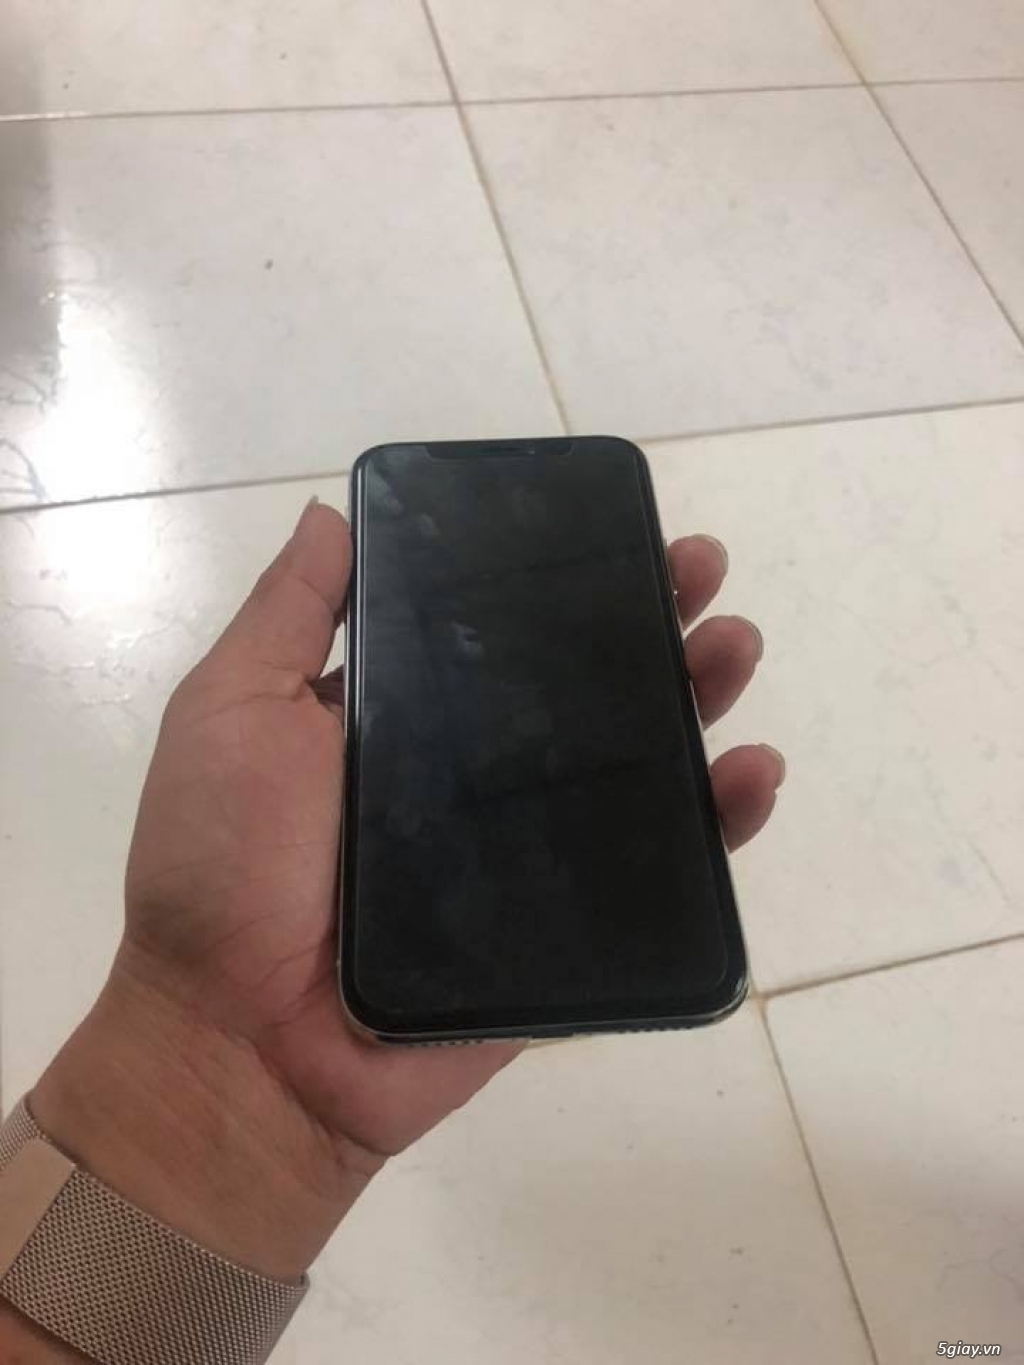 iphone X 64gb Silve - 1